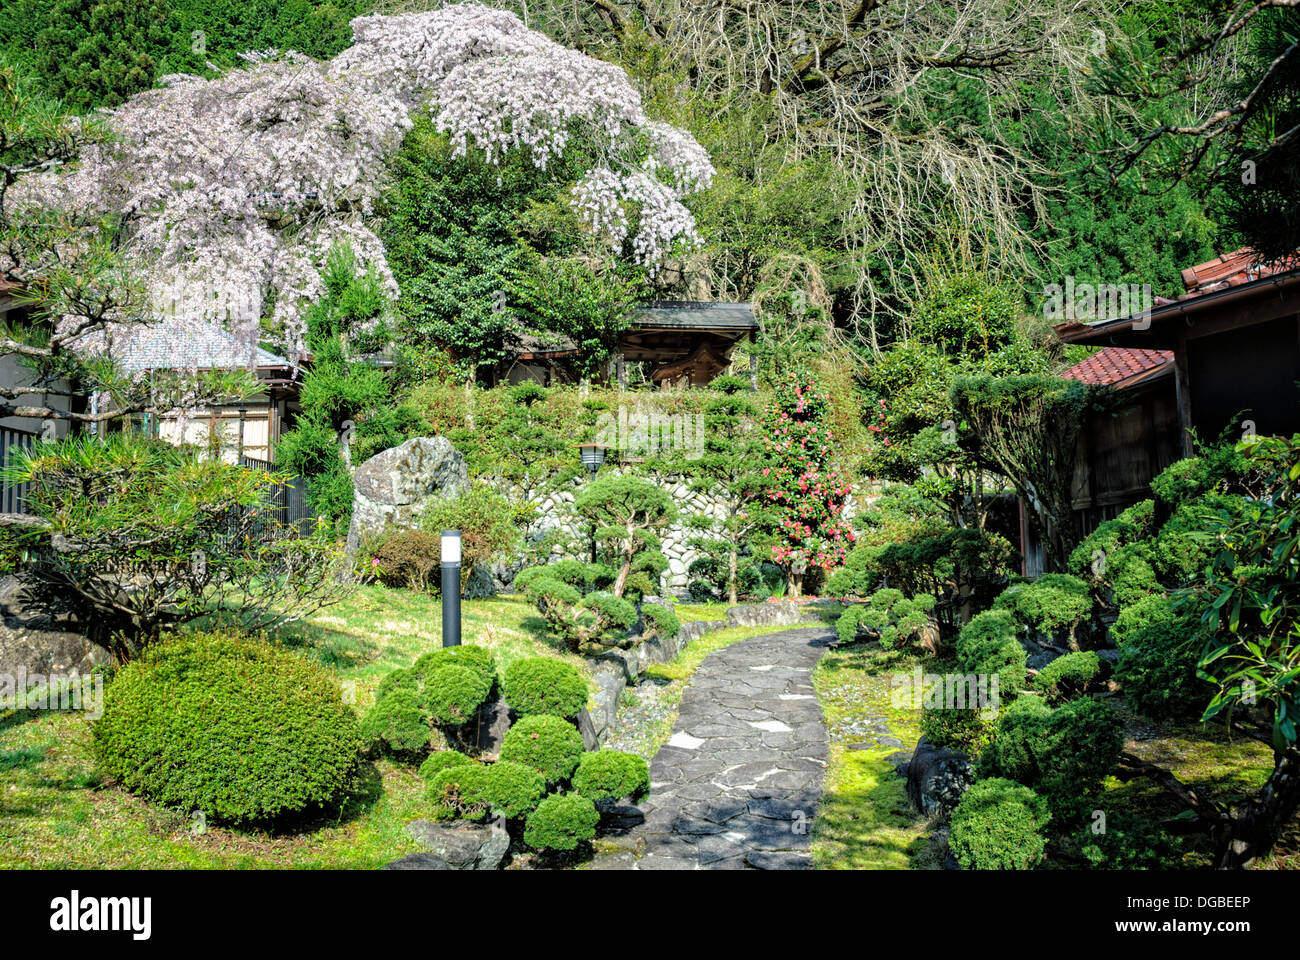 Kunstvolle, traditionelle japanische Garten mit Kirschblüten (Sakura) und Formschnitt Sträuchern. Stockfoto